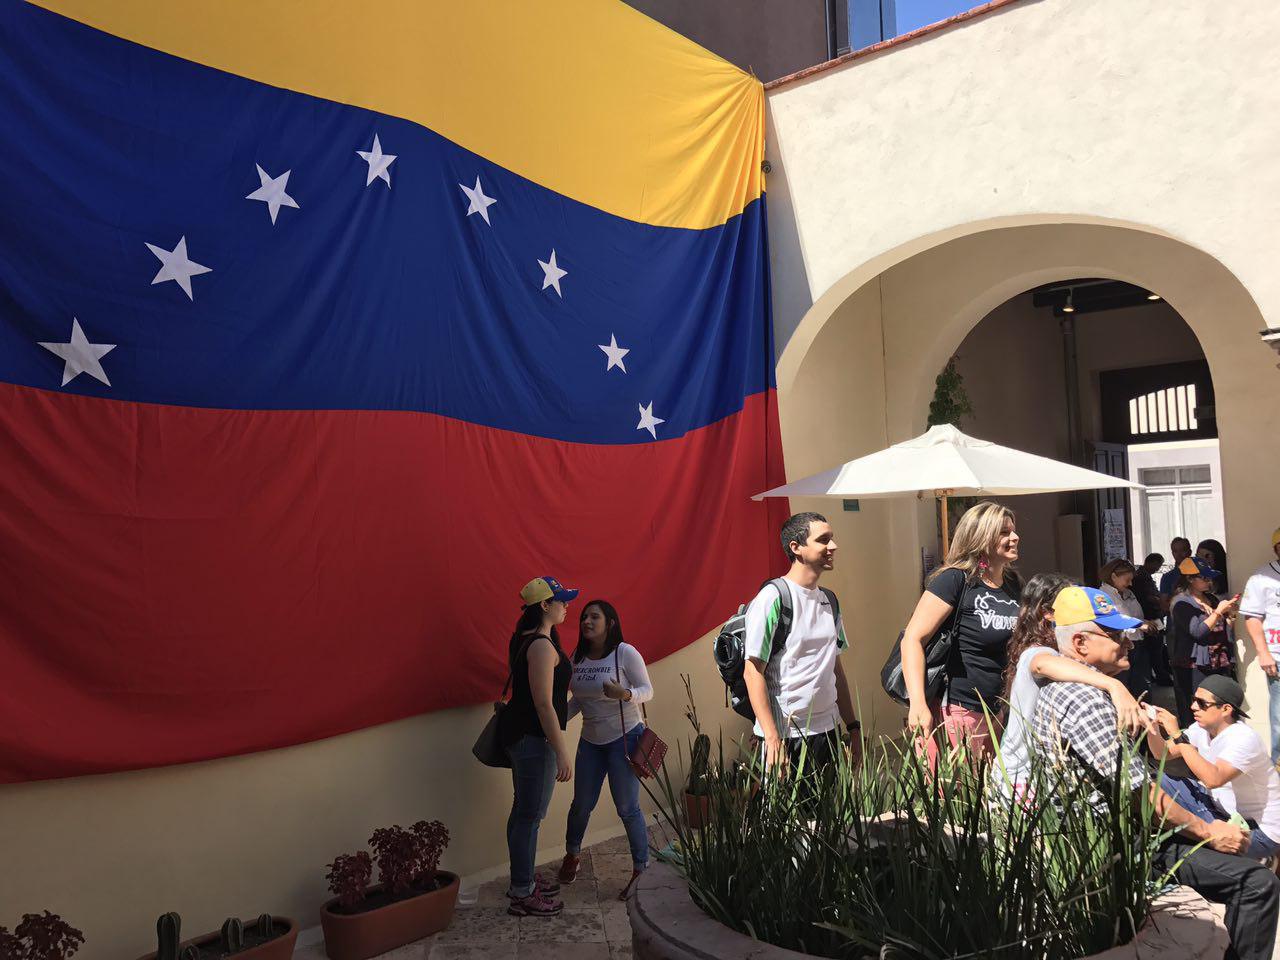  “Consulta Soberana” superó expectativas, destaca comunidad venezolana en Querétaro